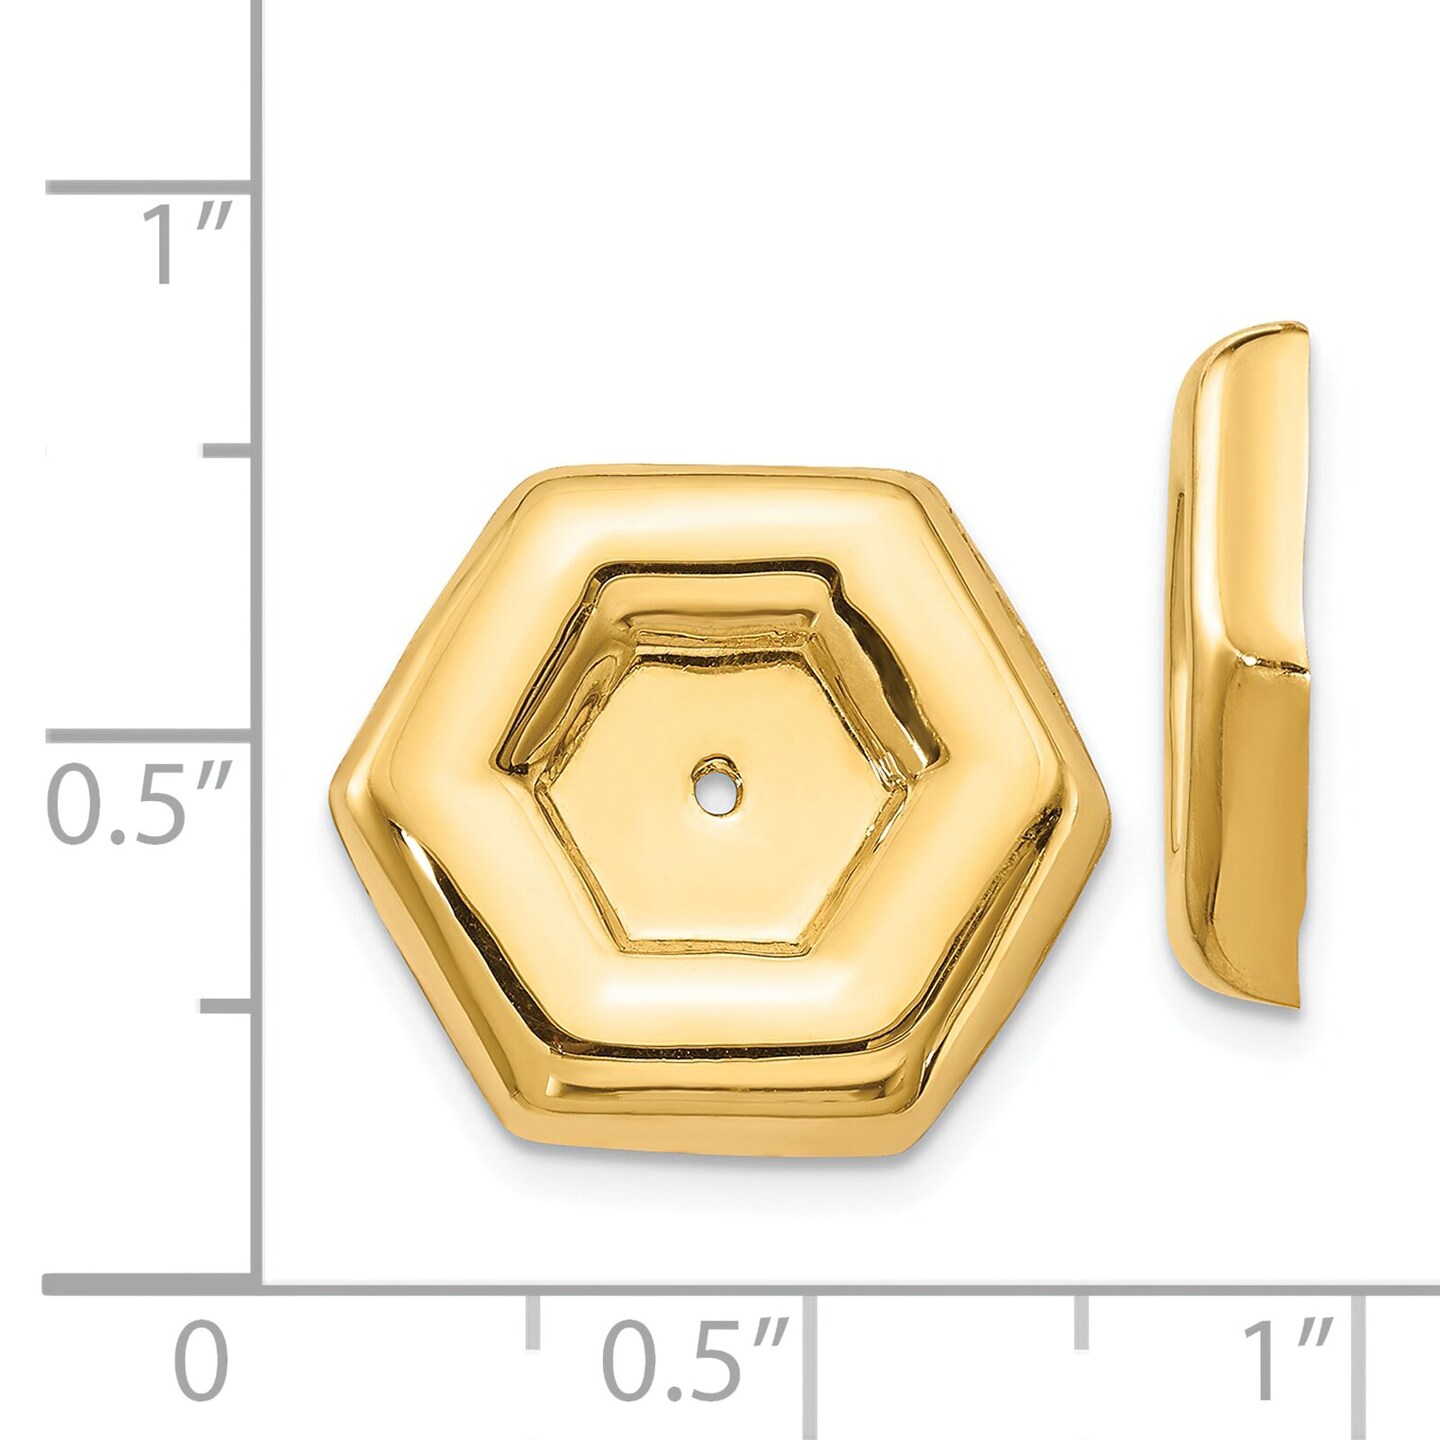 14K Yellow Gold Fancy Earring Jackets Jewelry New 15 X 17mm 